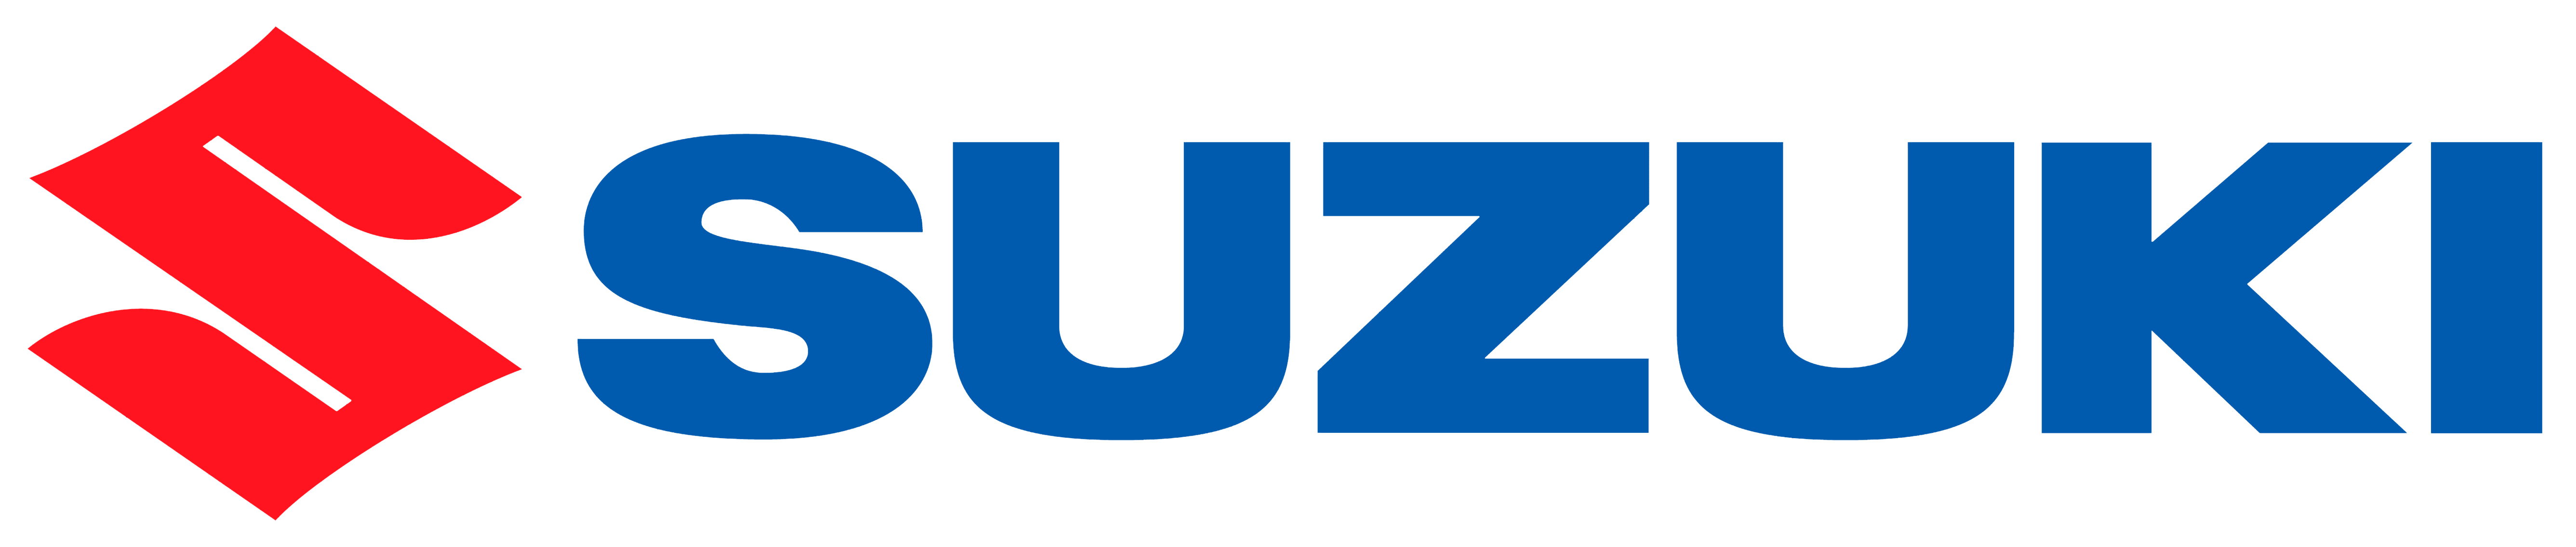 File:Suzuki logo.png